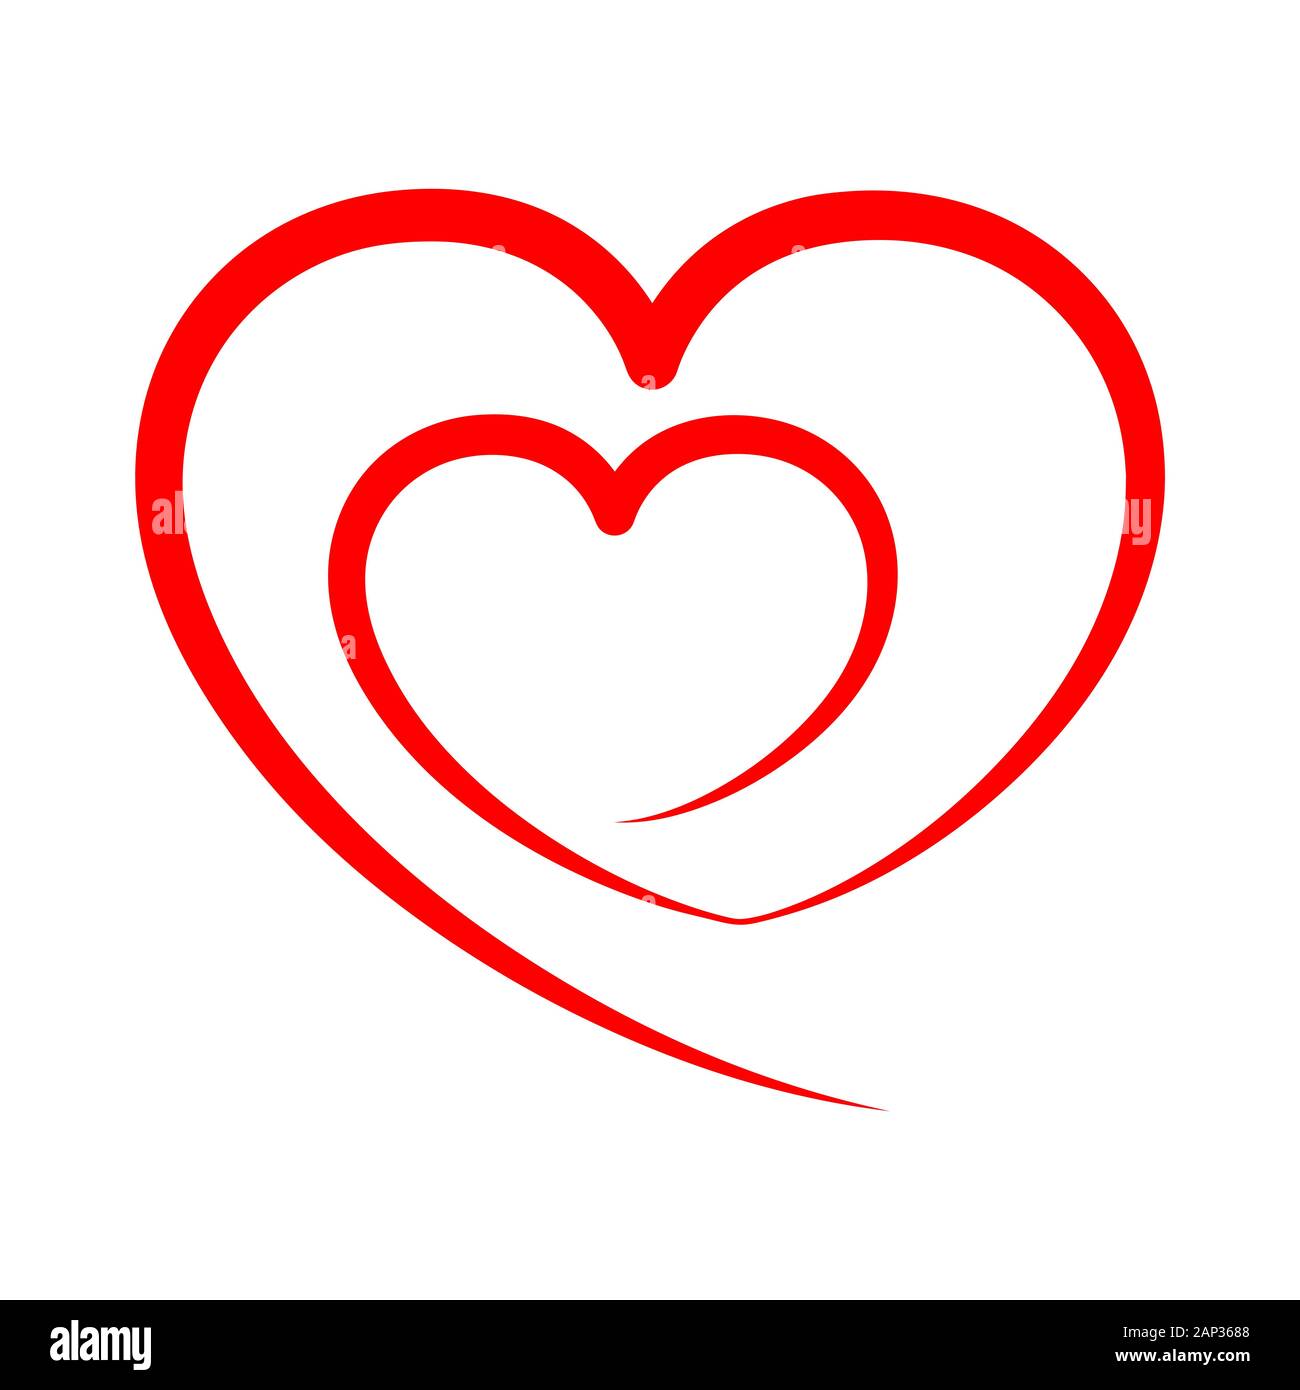 Abstraktes Herz Form skizzieren. Vector Illustration. Rotes Herz Symbol im flachen Stil. Das Herz als Symbol der Liebe. Stock Vektor